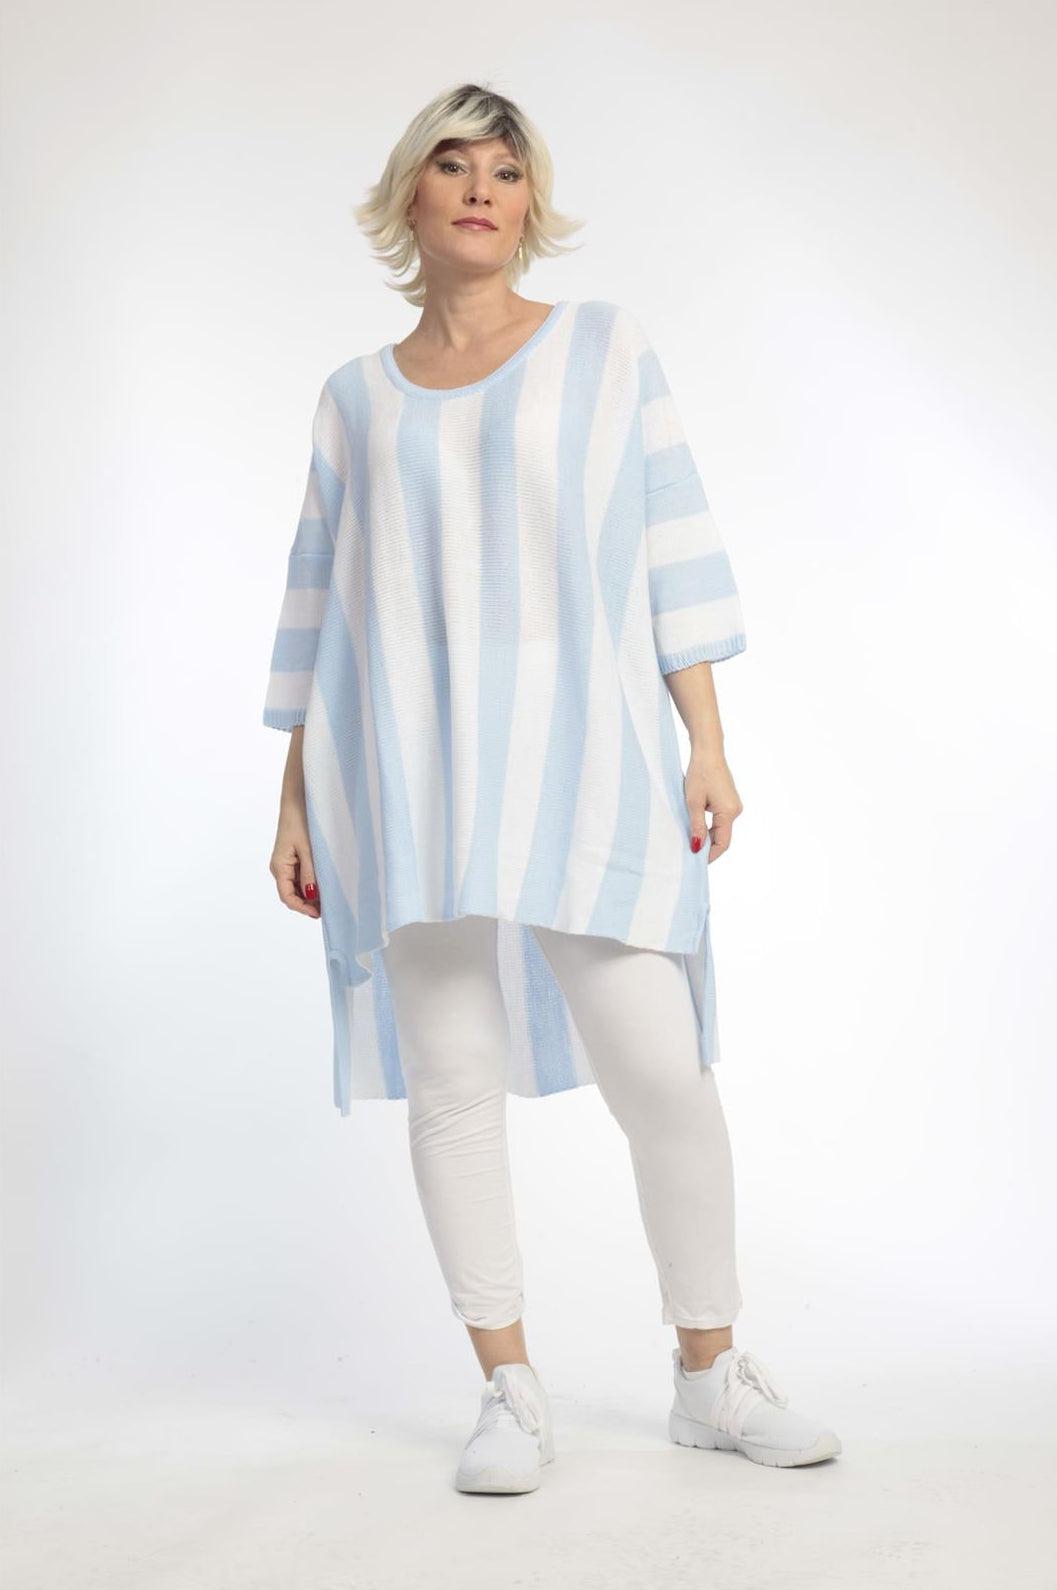 Alltags Pullover in Vokuhila Form aus feiner Strick Qualität, Hellblau-Weiß Lagenlook Oversize Mode B2B Großhandel